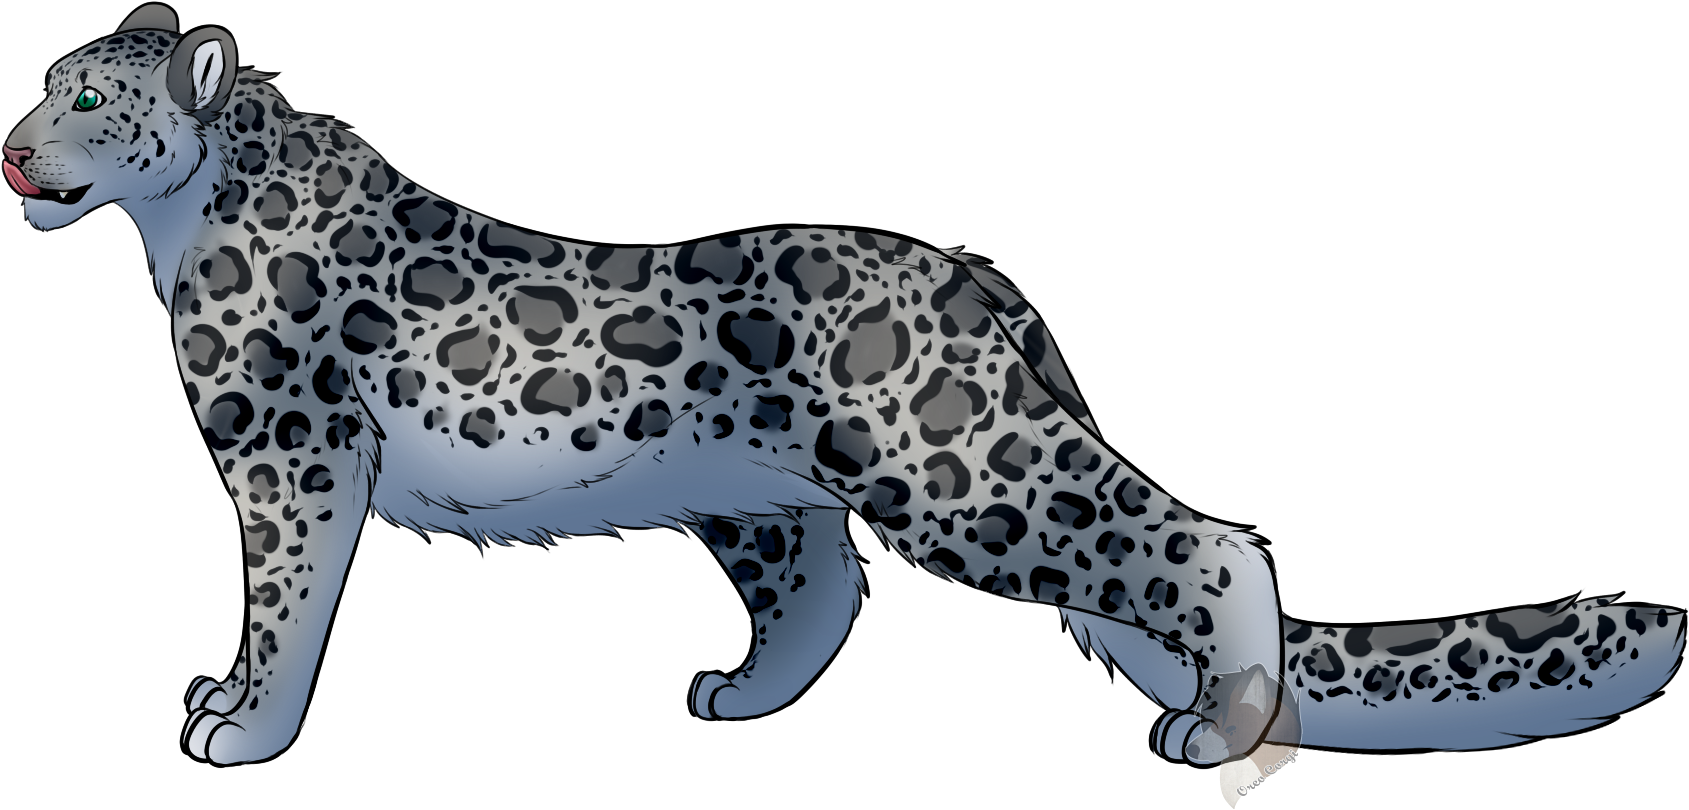 A Cartoon Of A Leopard